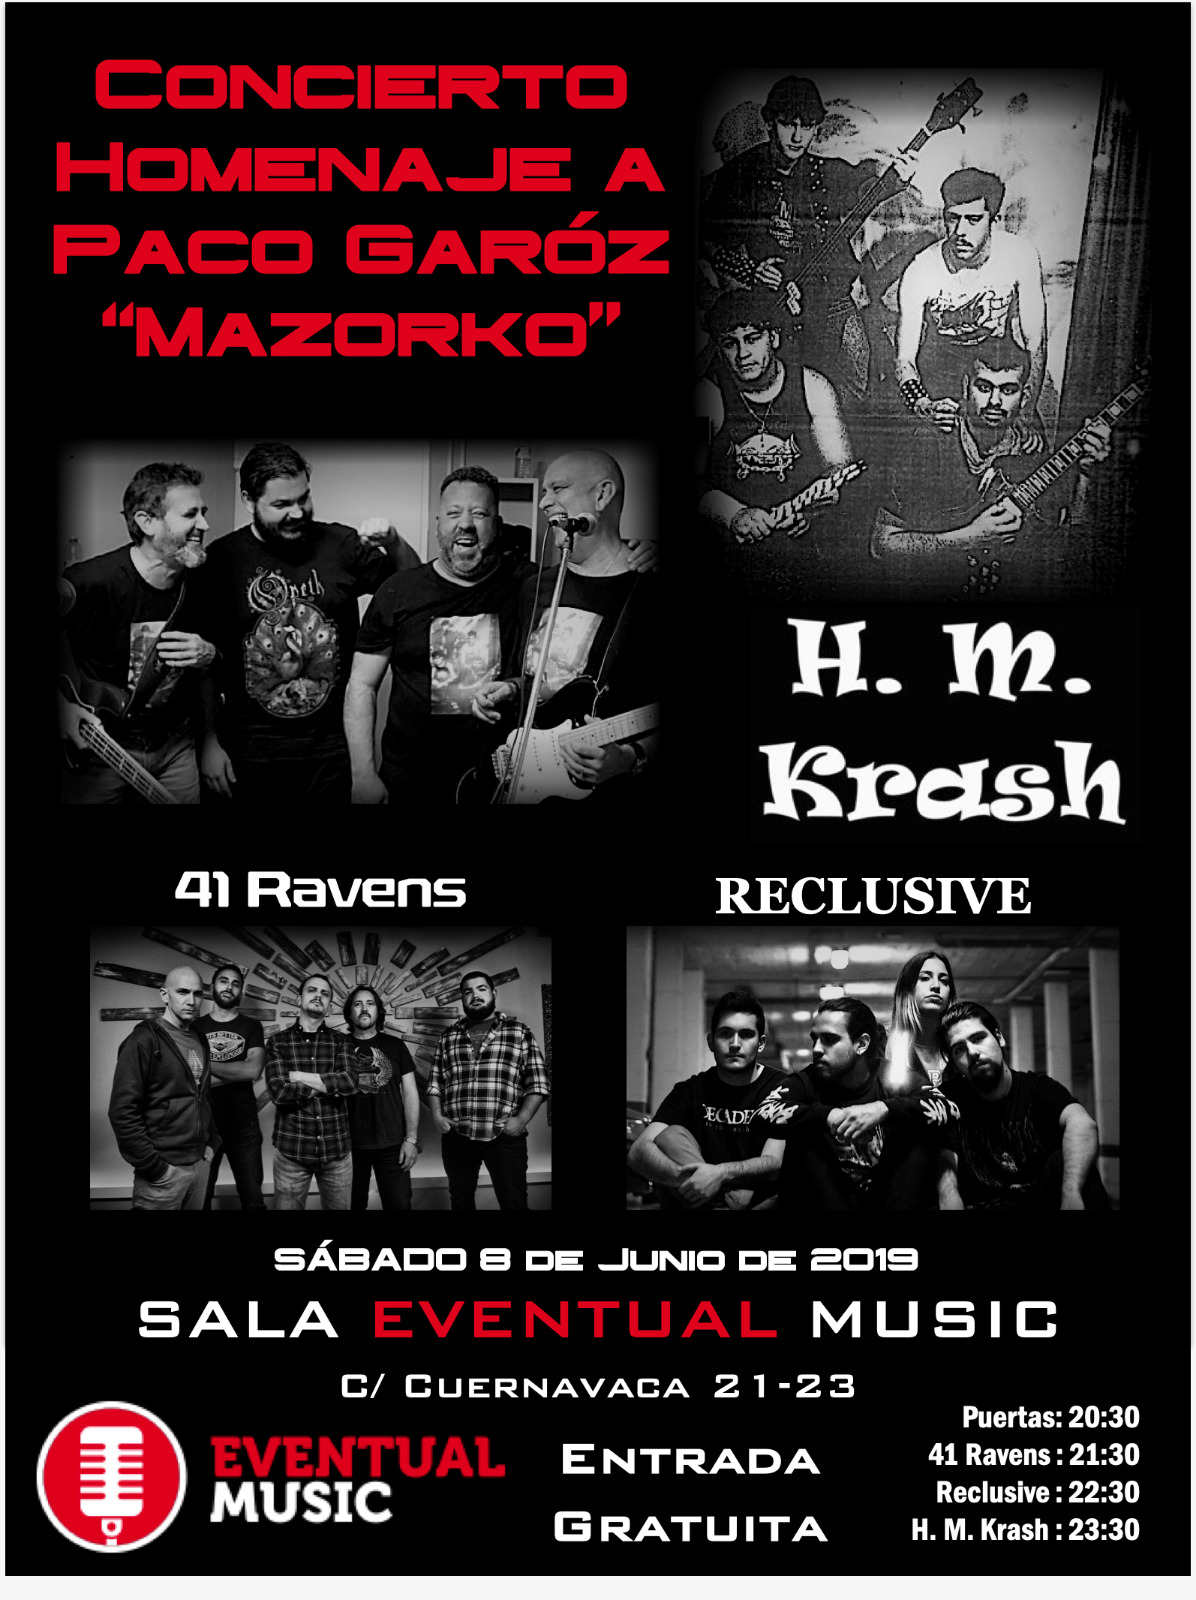 Concierto homenaje a Paco Garóz Mazorko con HM Krash + 41 Ravers + Reclusive en Sala Eventual Music de Málaga